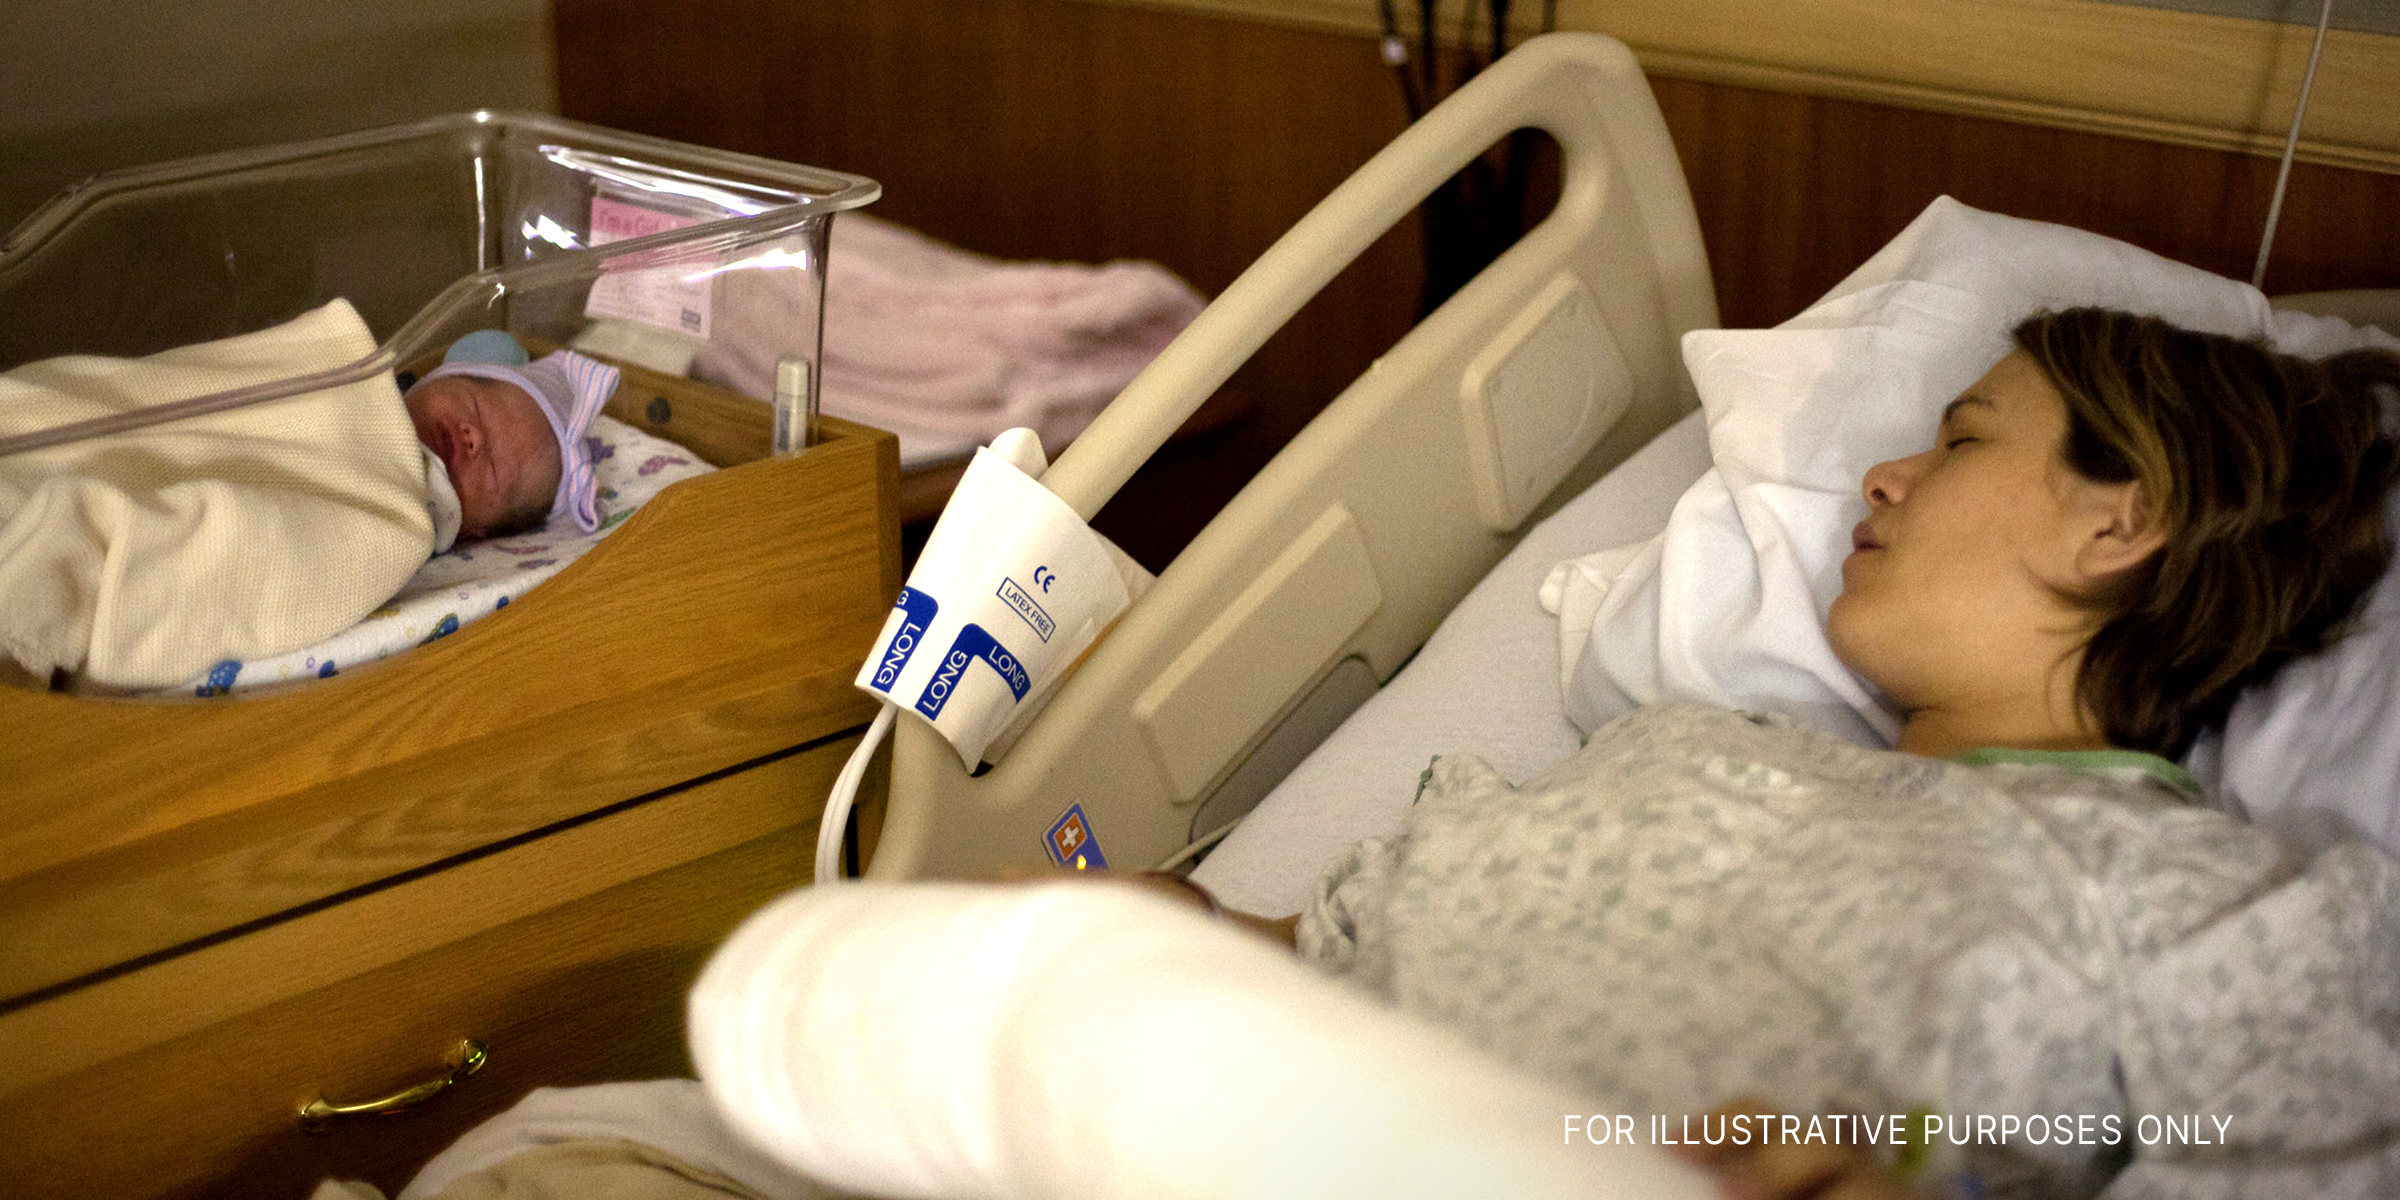 Eine Frau schläft in einem Krankenhausbett neben ihrem neugeborenen Baby | Quelle: Flickr.com/Lars Plougmann/CC BY-SA 2.0